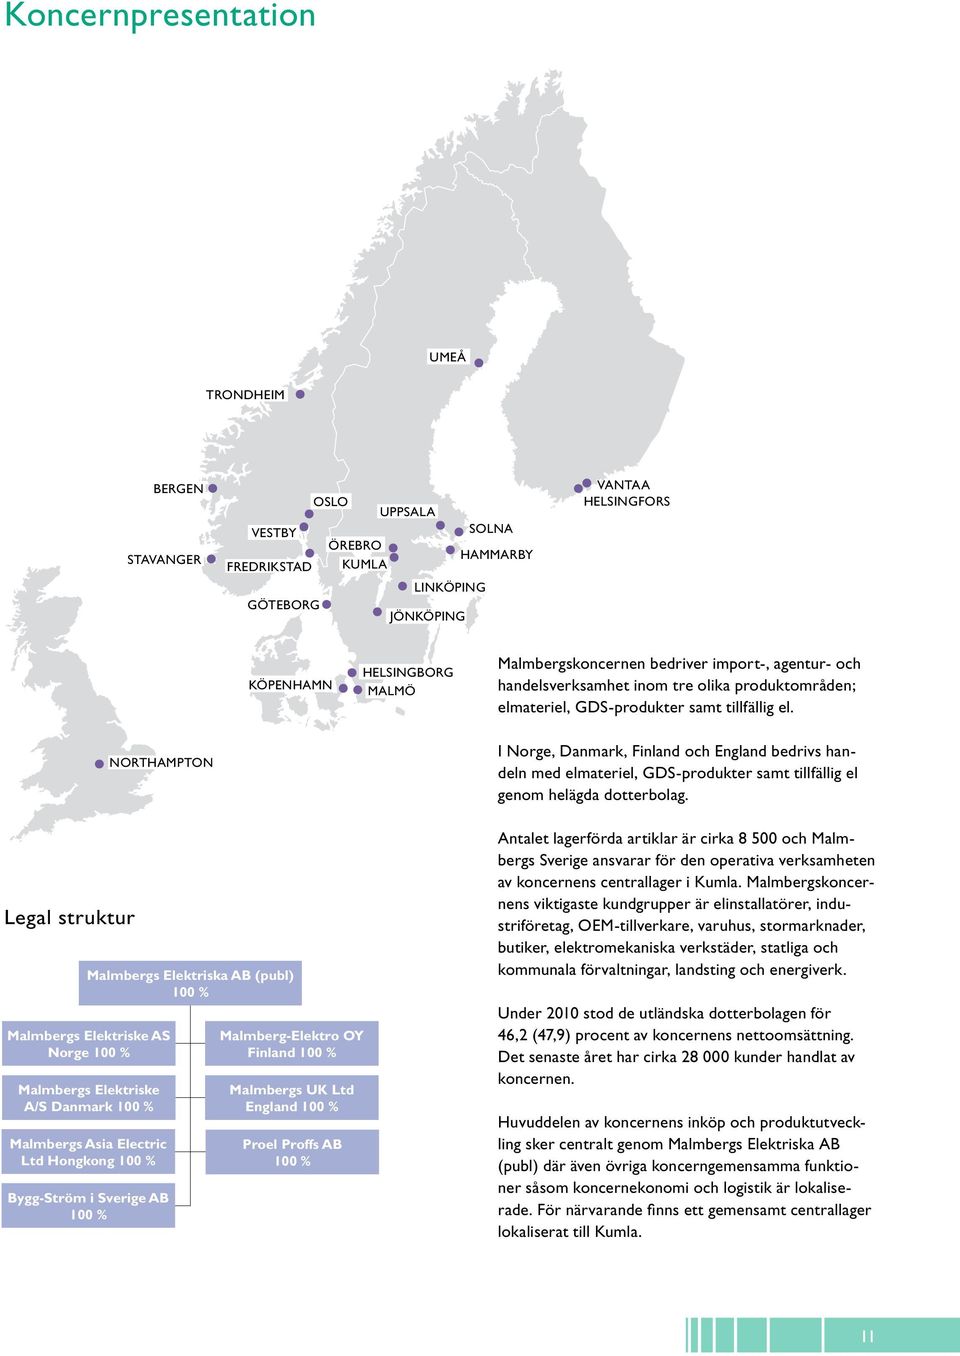 NORTHAMPTON I Norge, Danmark, Finland och England bedrivs handeln med elmateriel, GDS-produkter samt tillfällig el genom helägda dotterbolag.